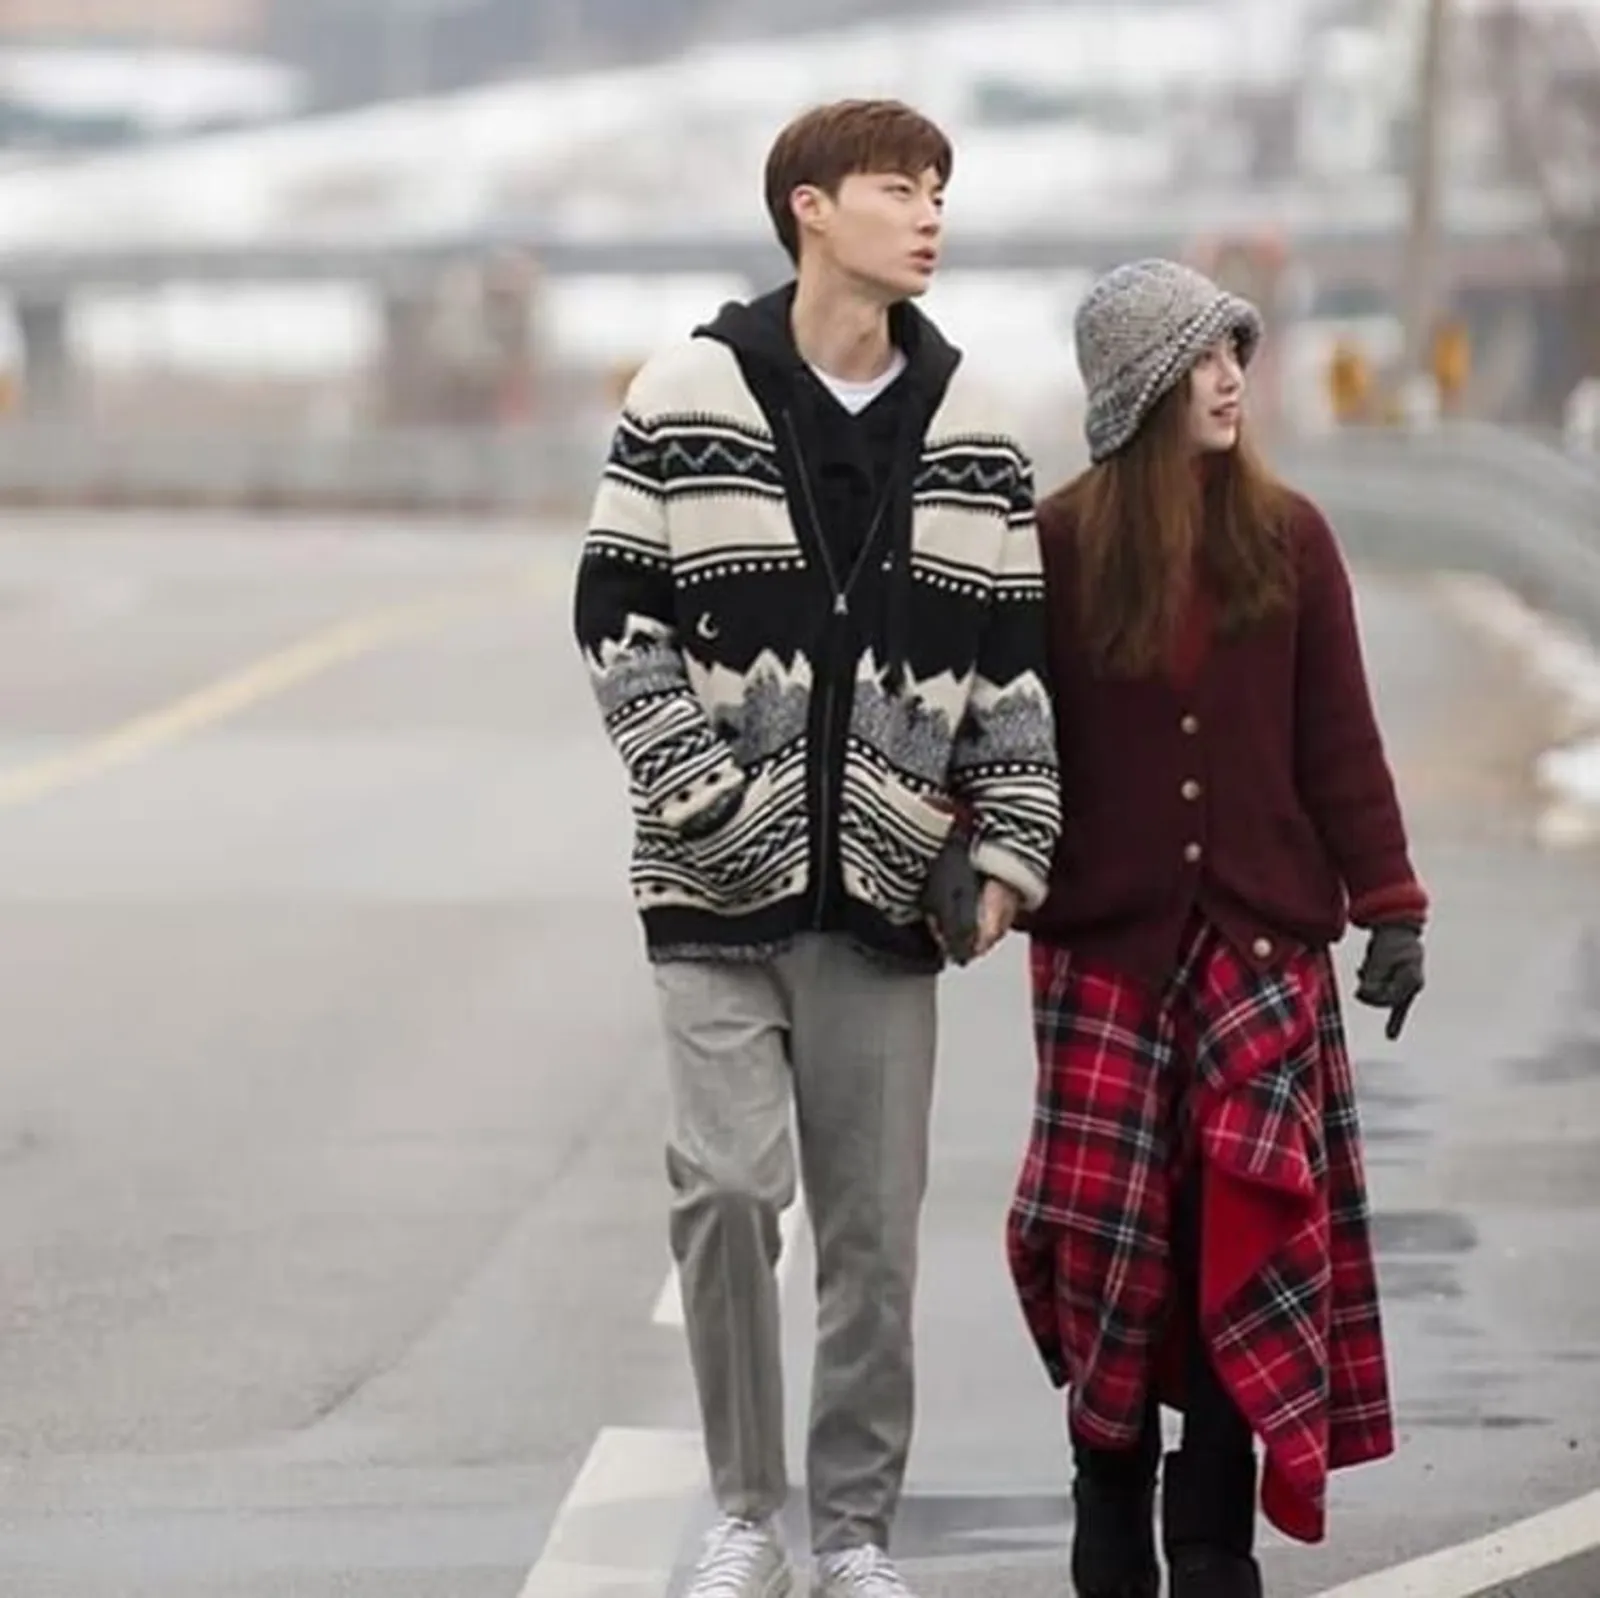 Kisah Cinta Goo Hye Sun & Ahn Jae Hyun Sebelum Cerai, Manis Bak Drama